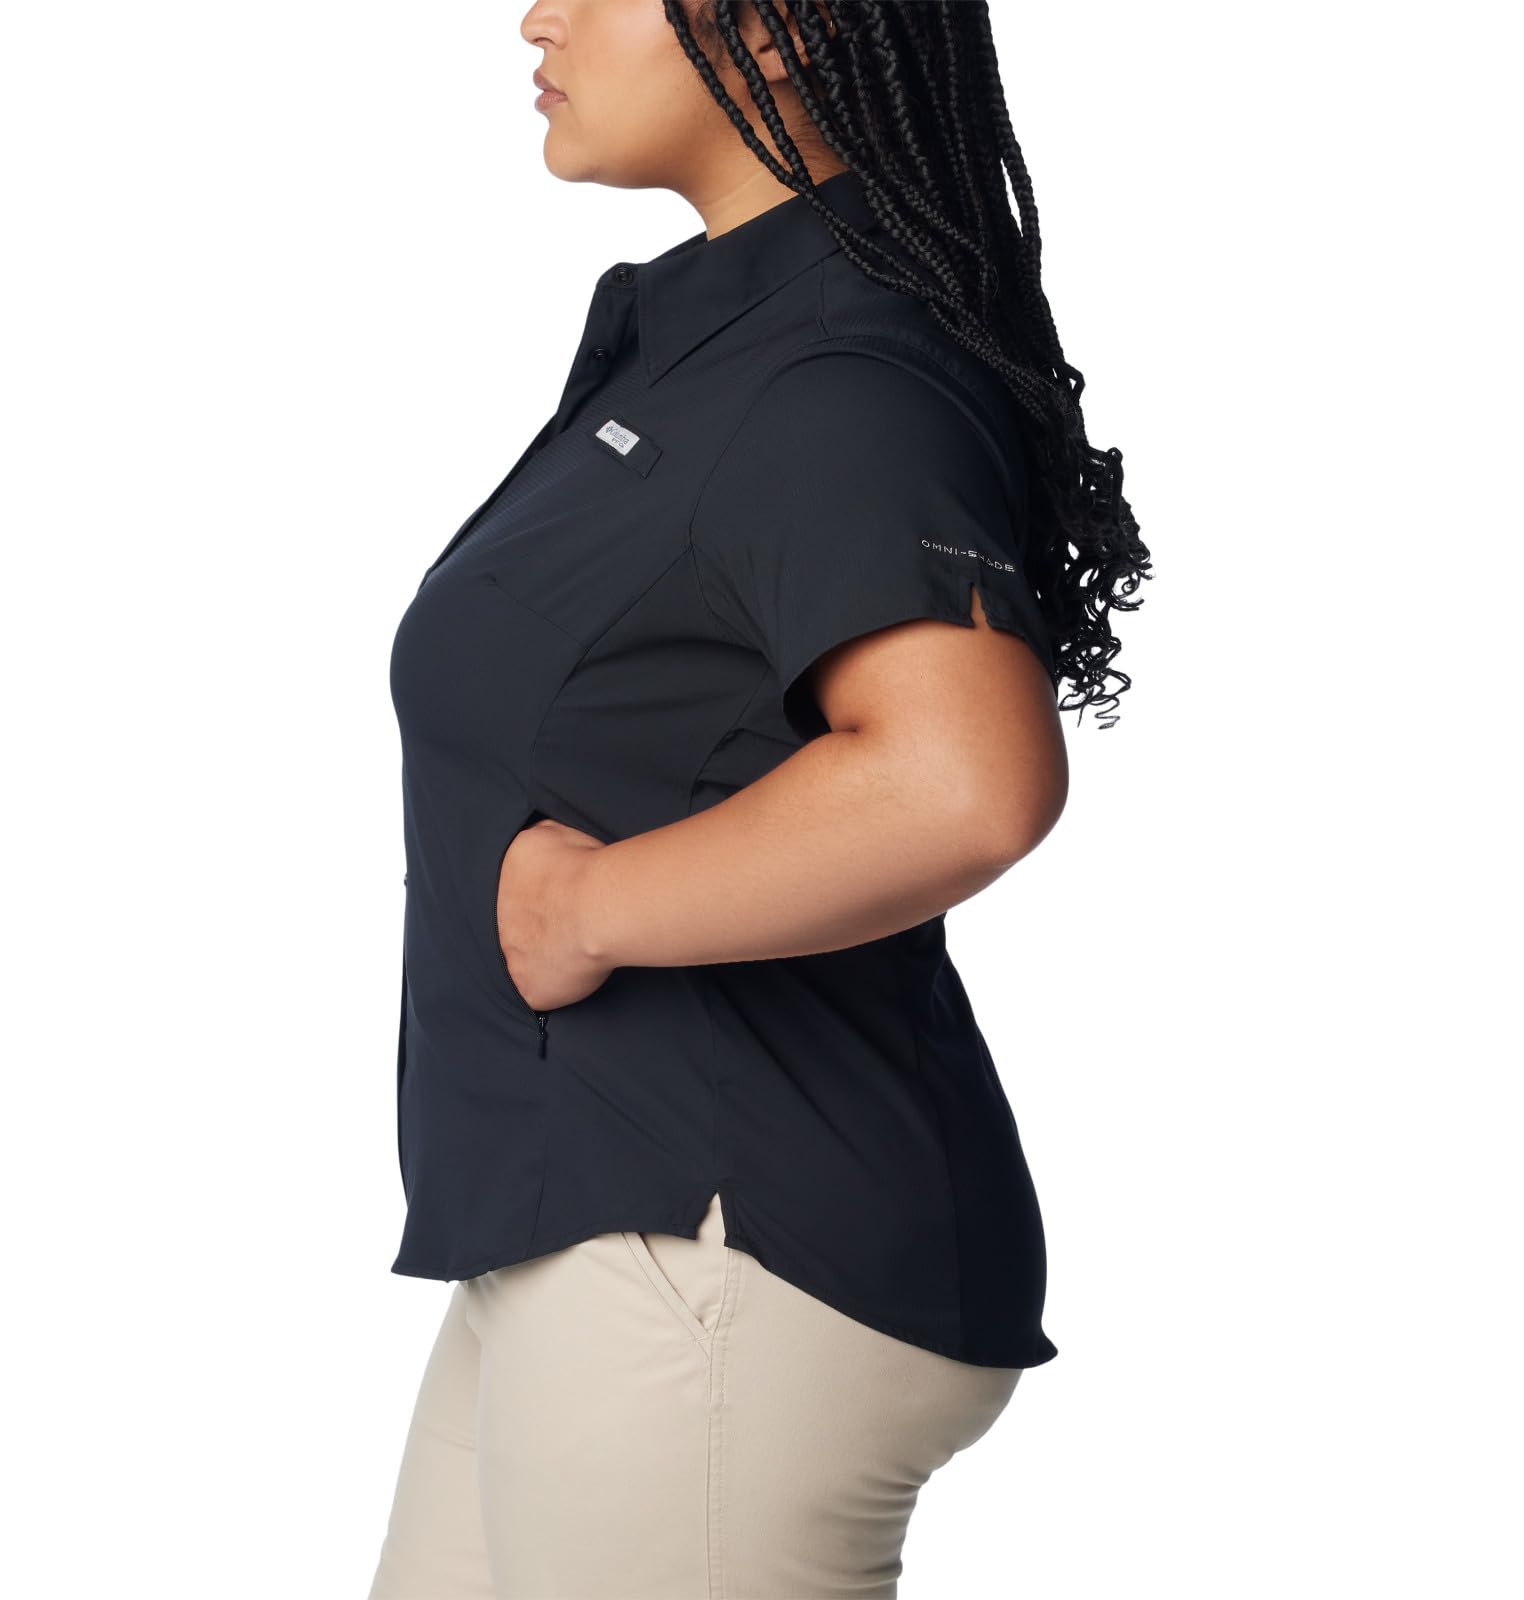 Columbia Women's PFG Tamiami II UPF 40 Short Sleeve Fishing Shirt, Black, Medium